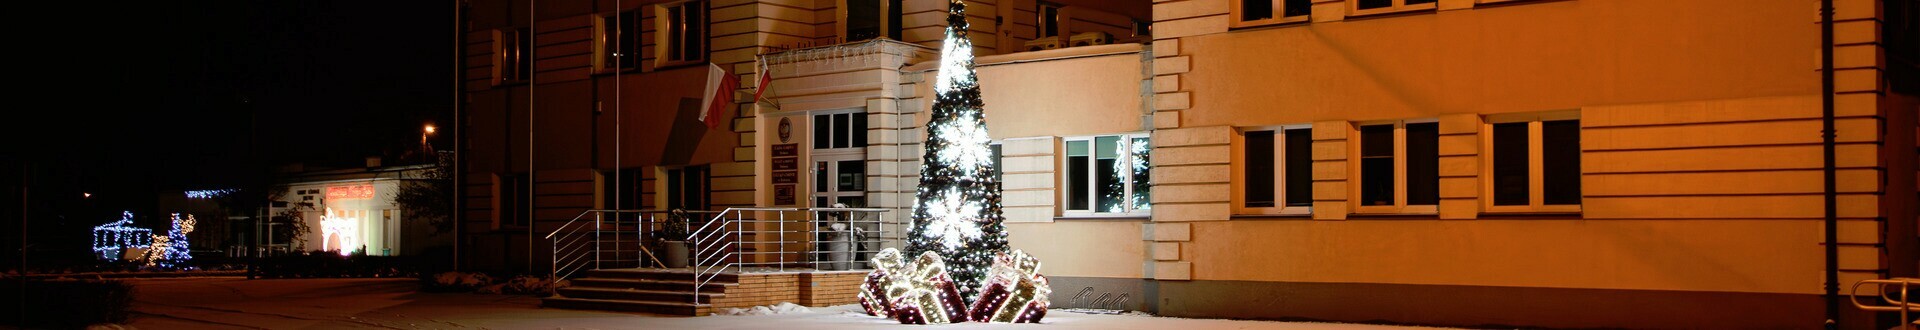 Baner top Gminy Dobrcz. Widok na Urząd Gminy w Dobrczu w zimowej odsłonie. Obok Urzędu stoi iluminacja świetlna w kształcie choinki.